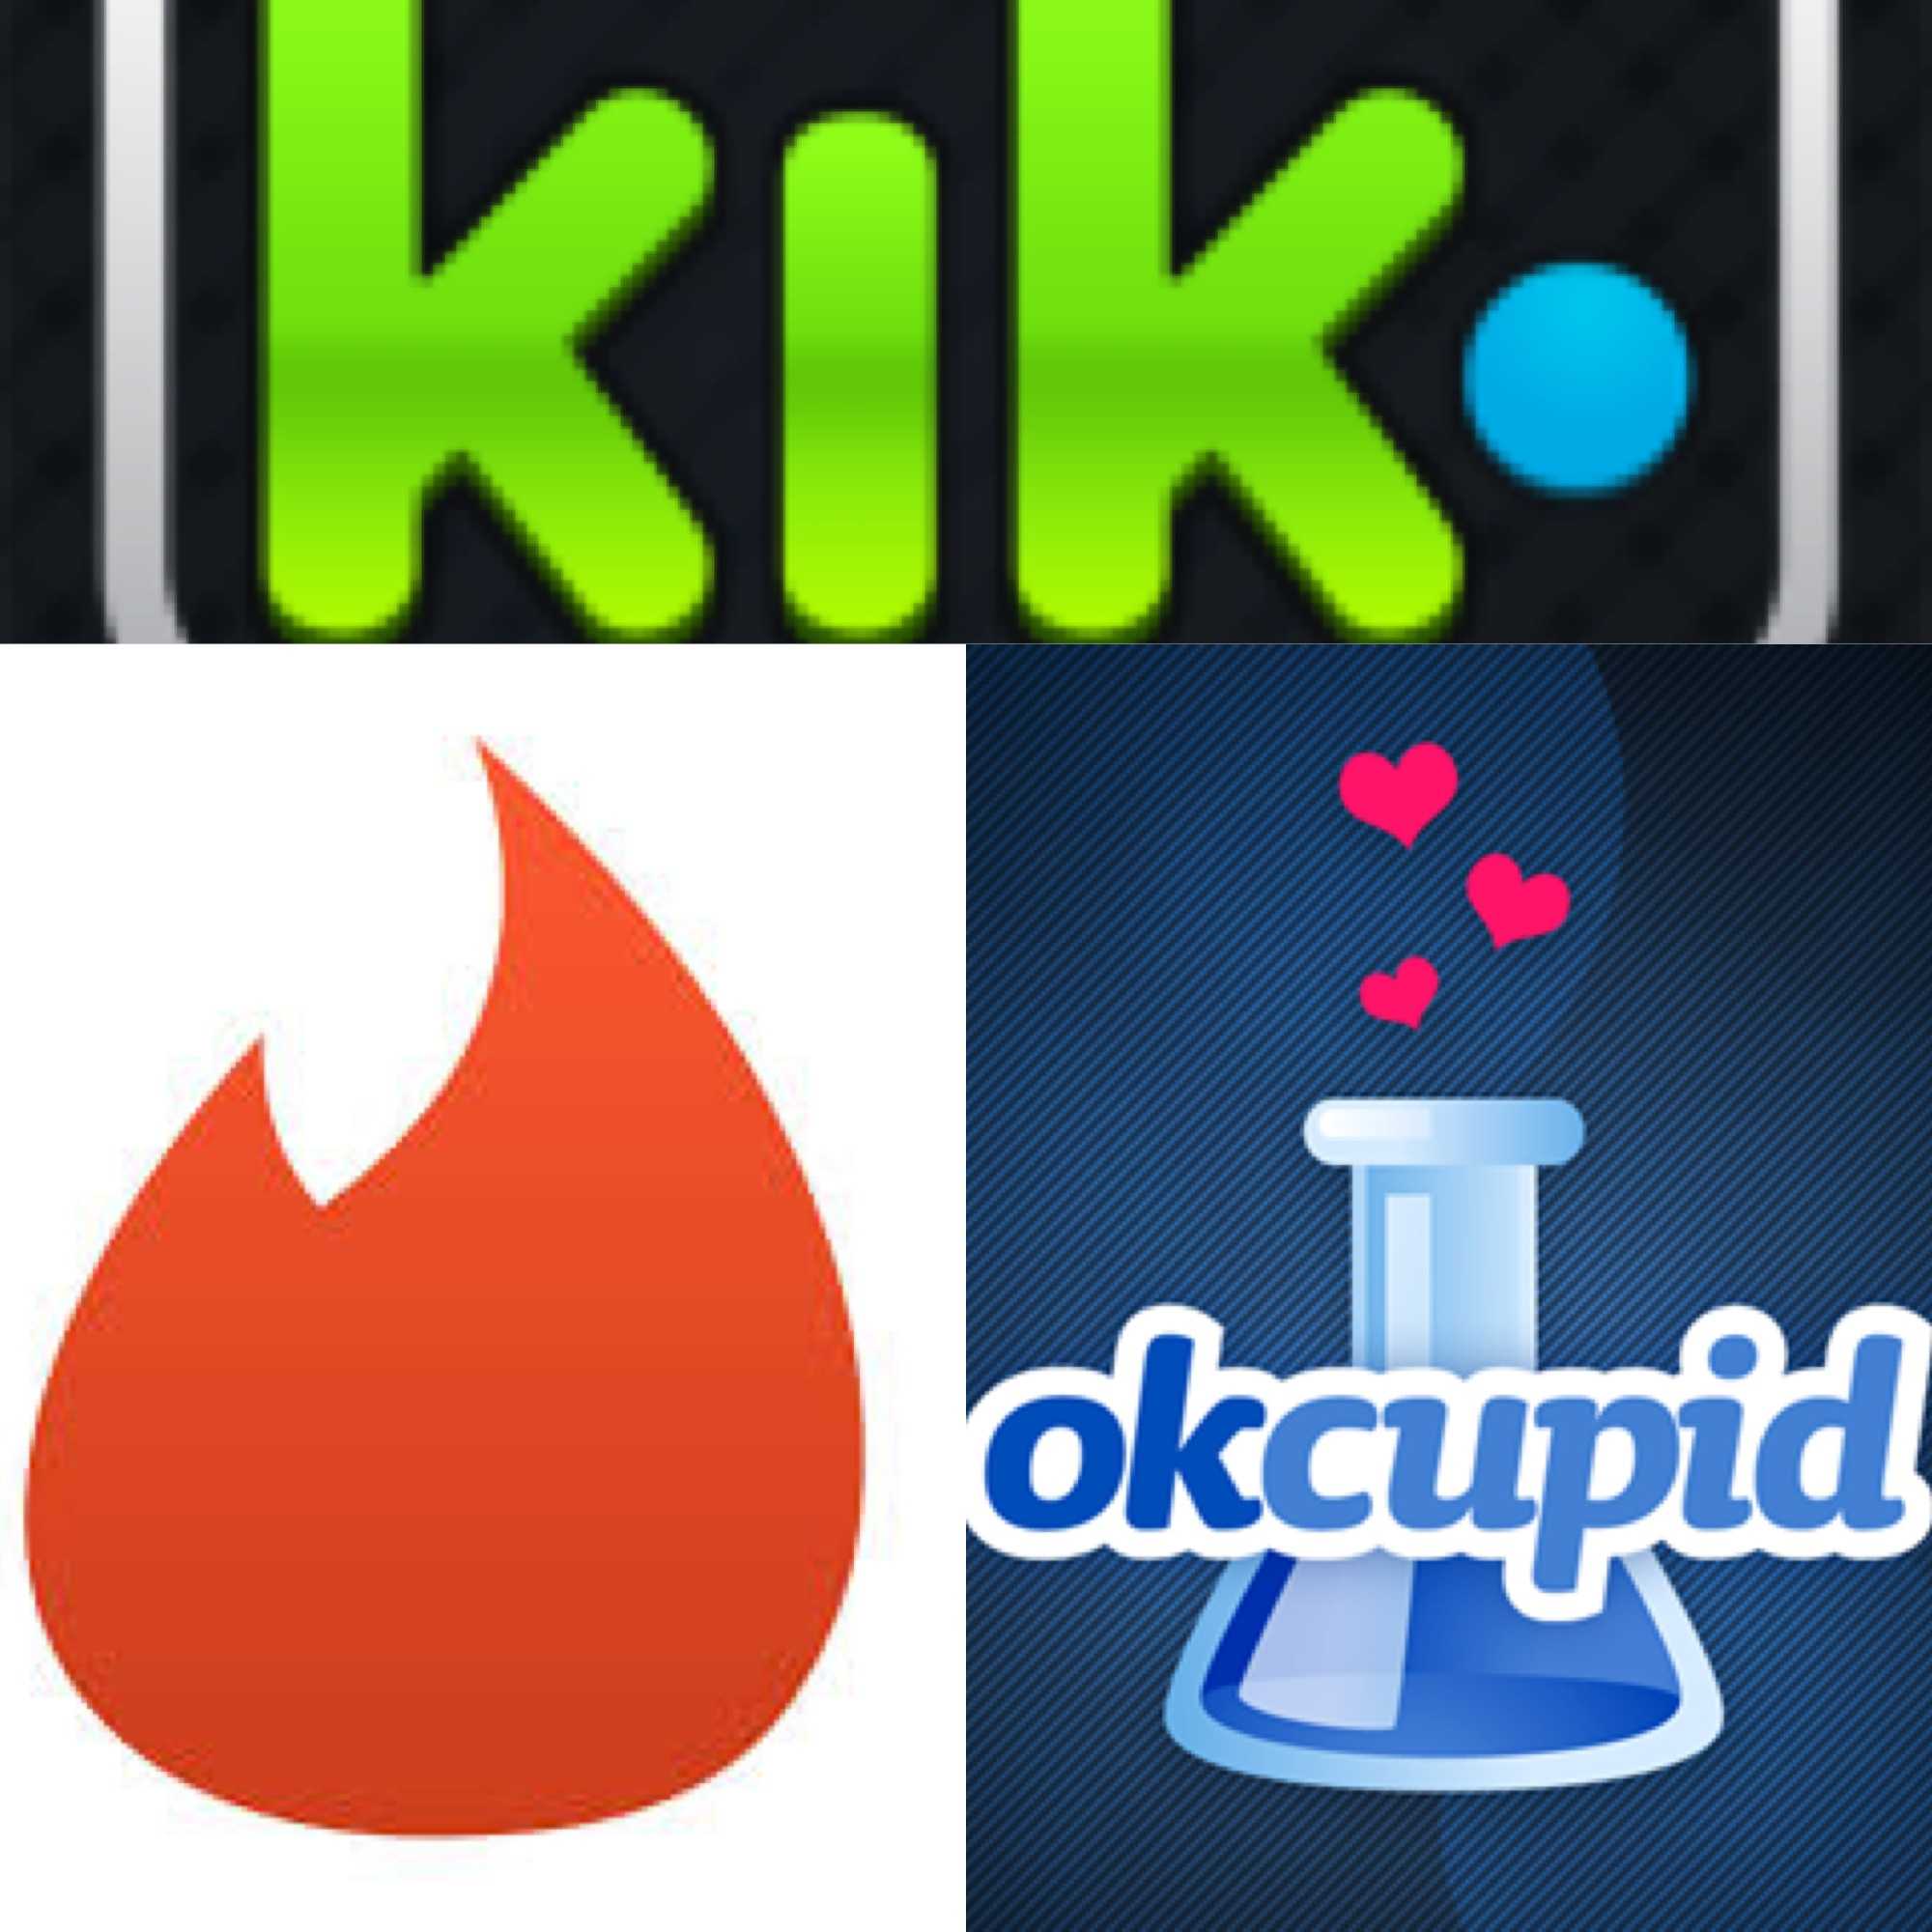 kik dating users